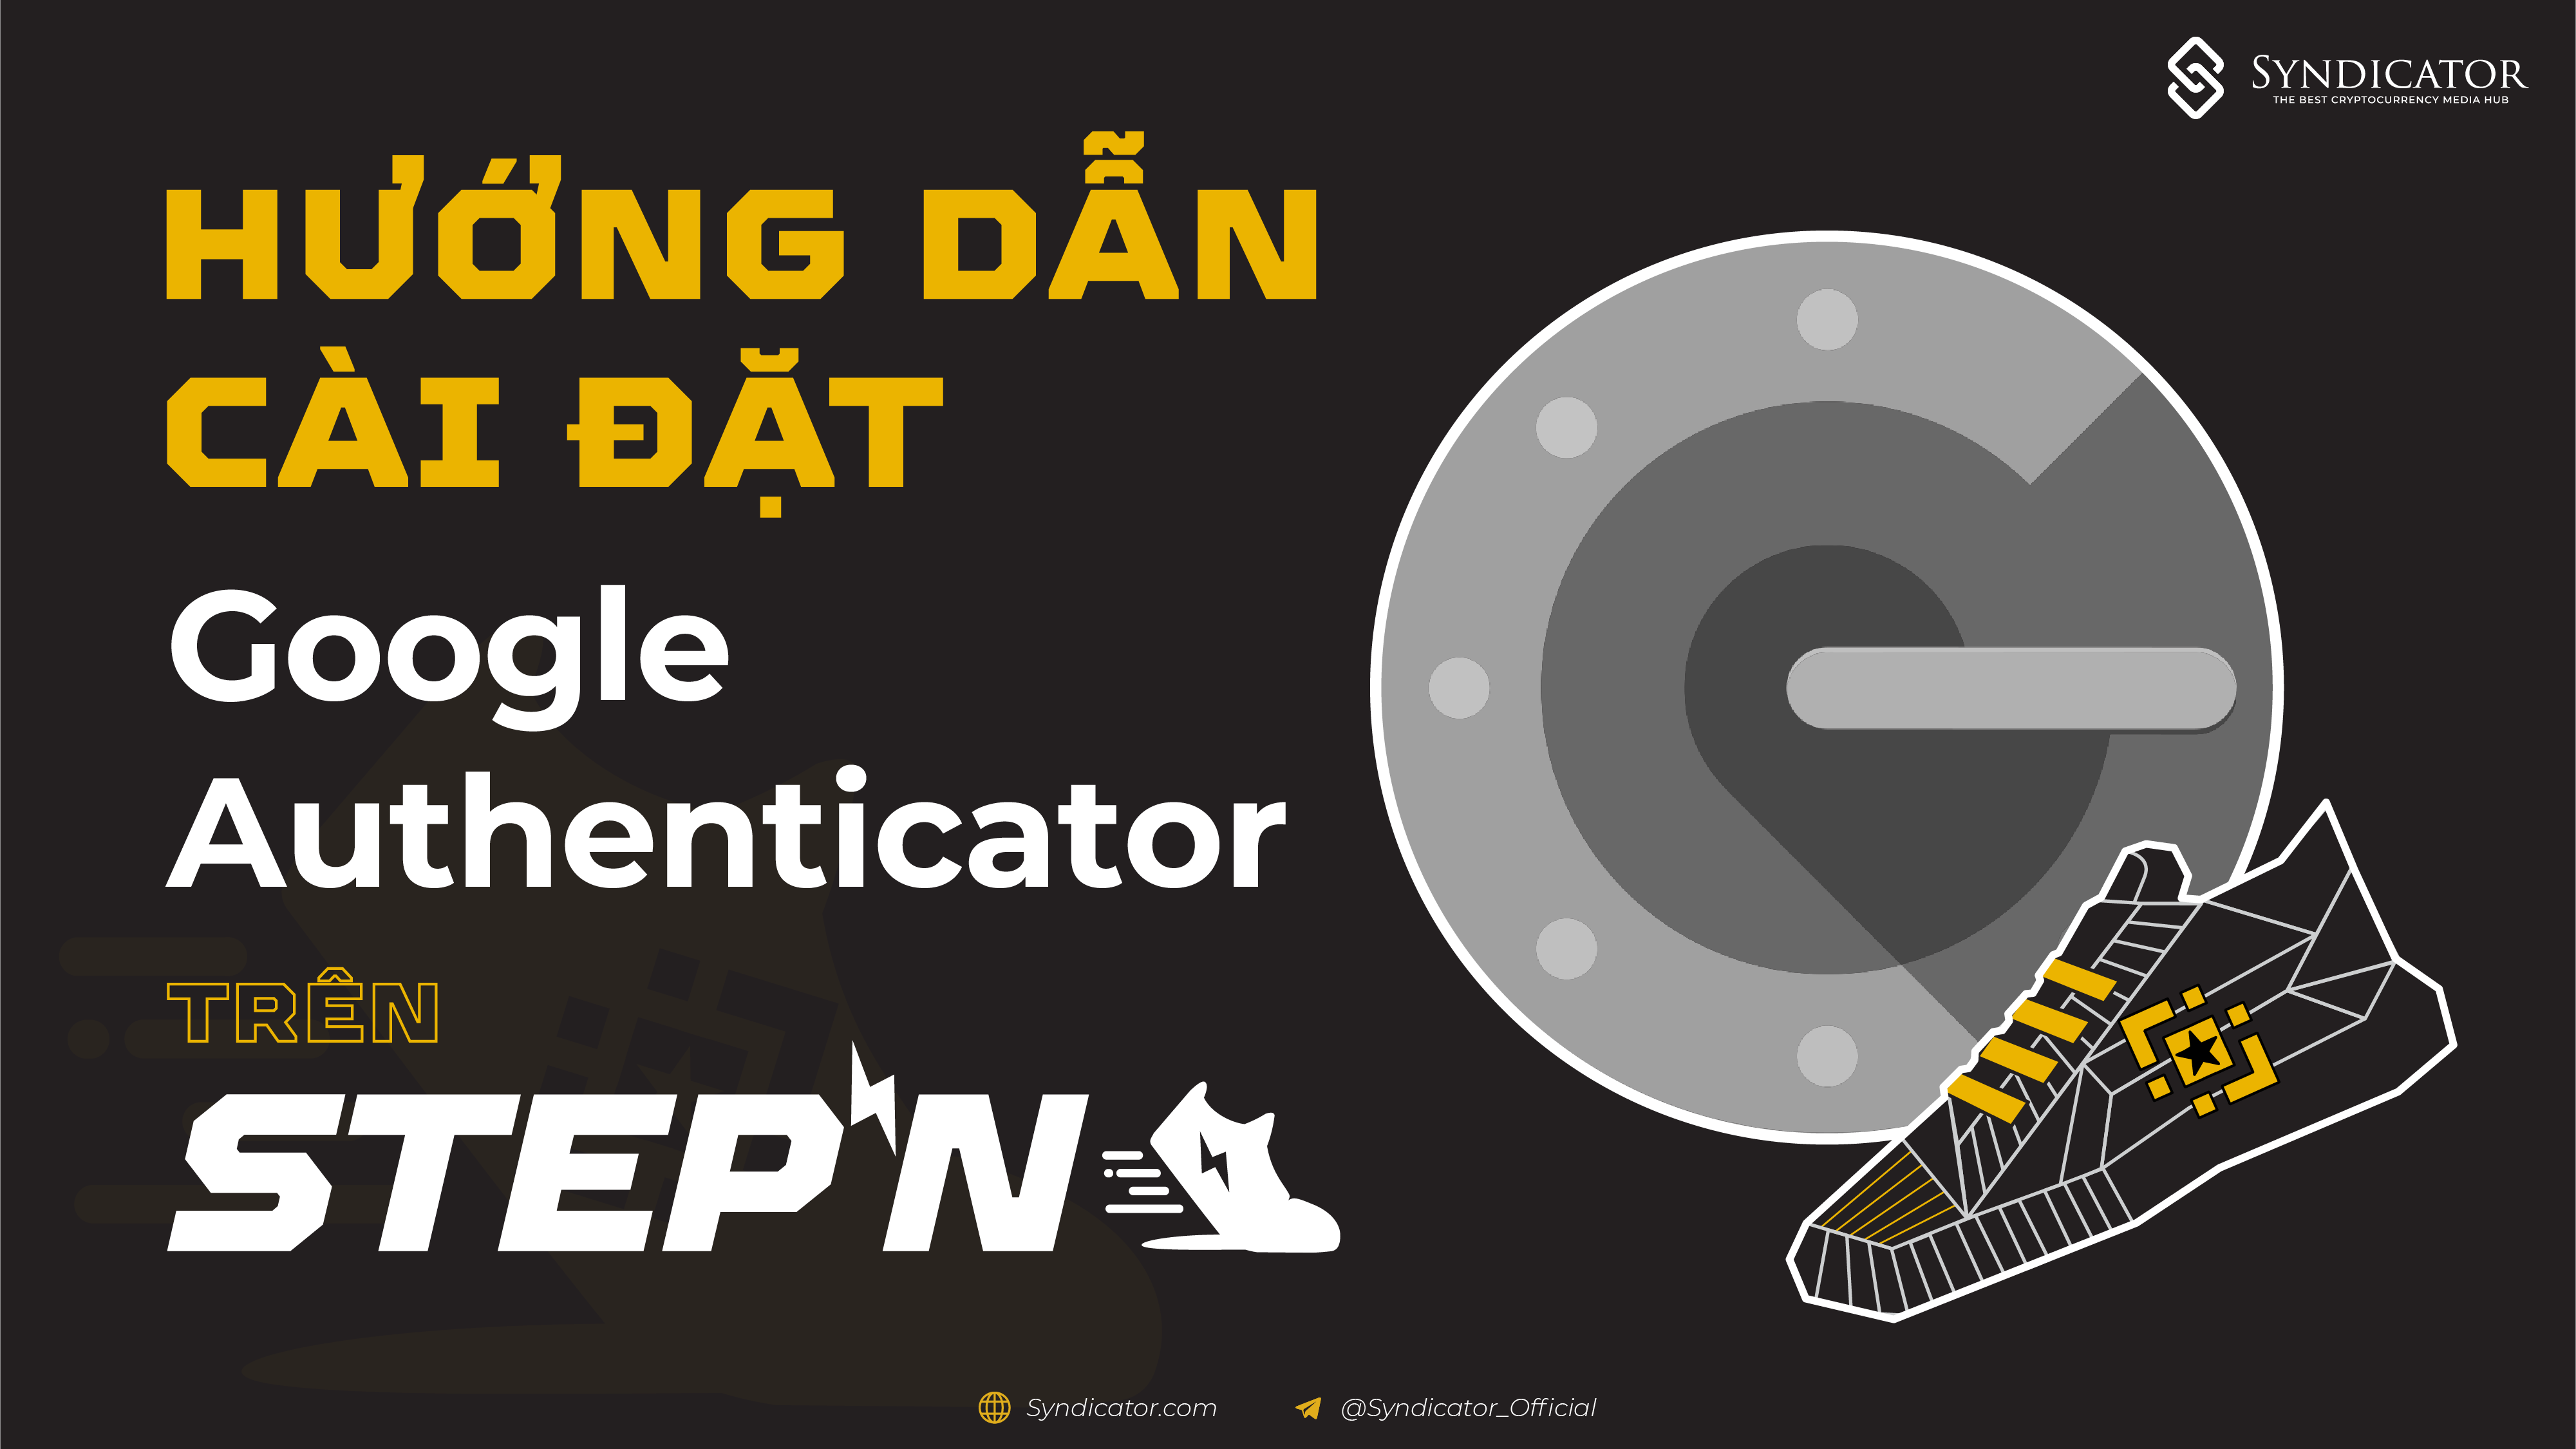 Hướng dẫn cài đặt Google Authenticator trên STEPN - Syndicator